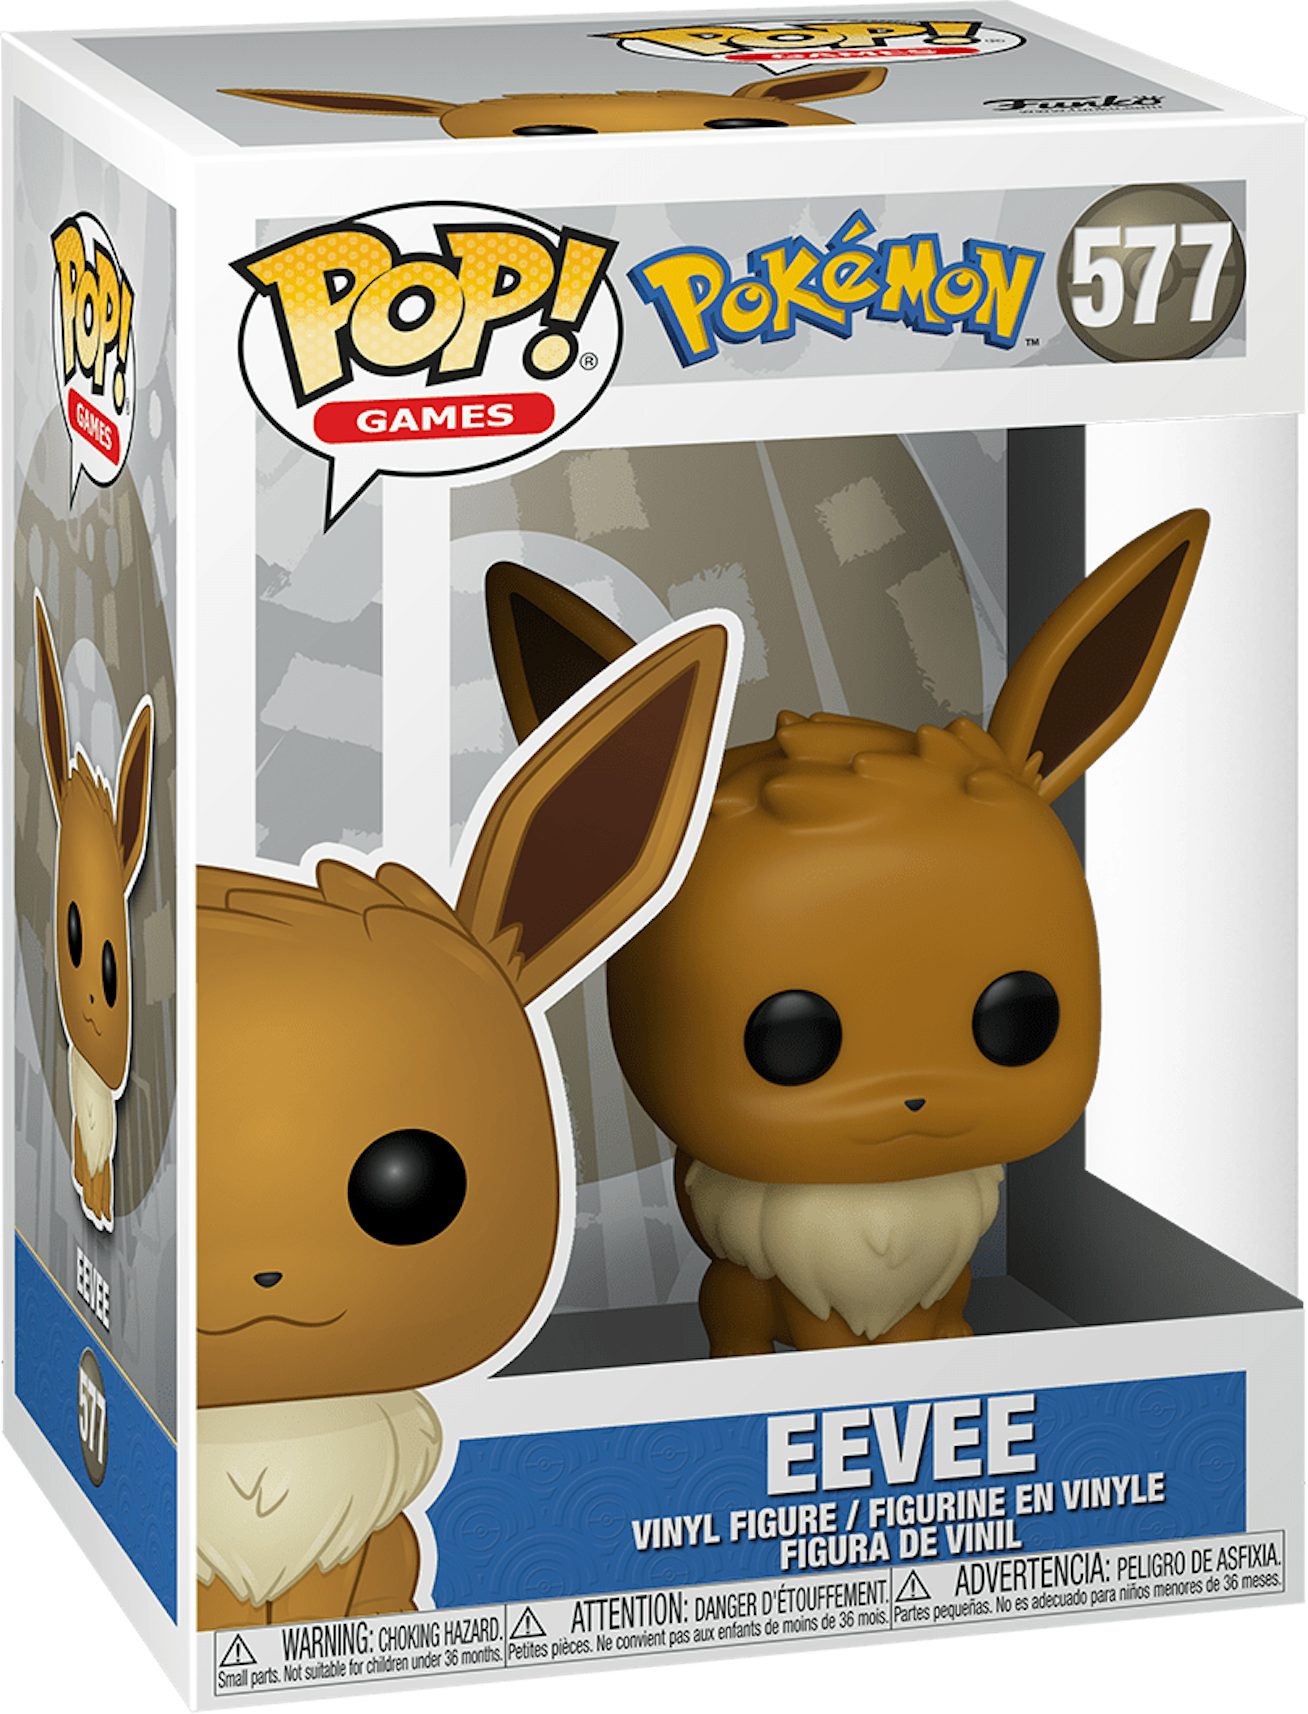 2019 18” Toy Factory Pokemon Eevee